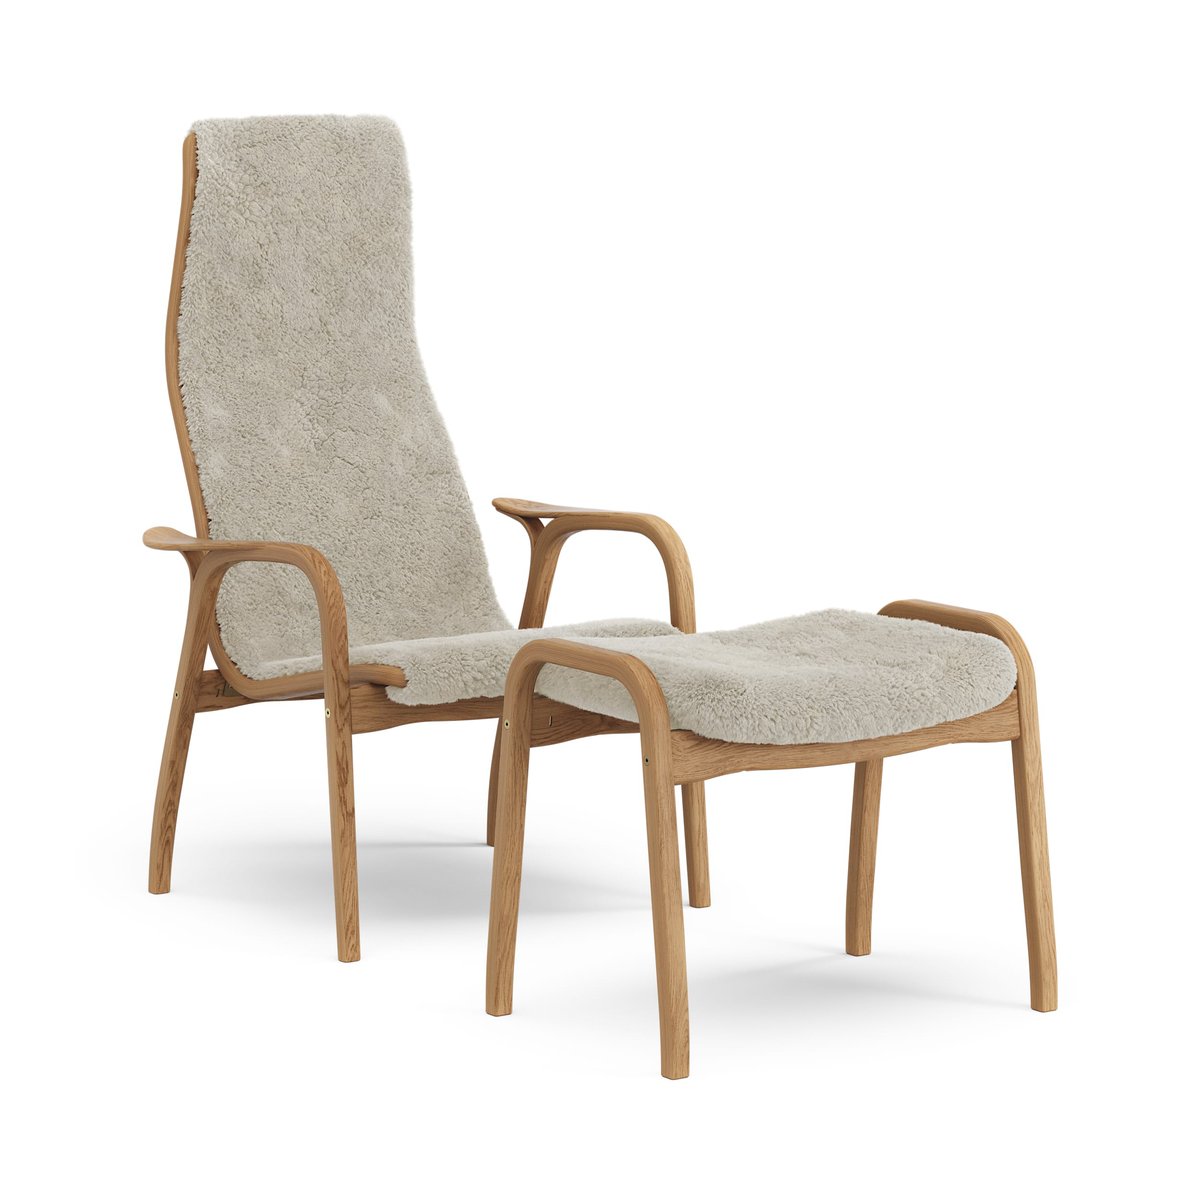 Swedese Lamino fauteuil en voetenbankje geolied eiken/schapenvacht Moonlight (beige)